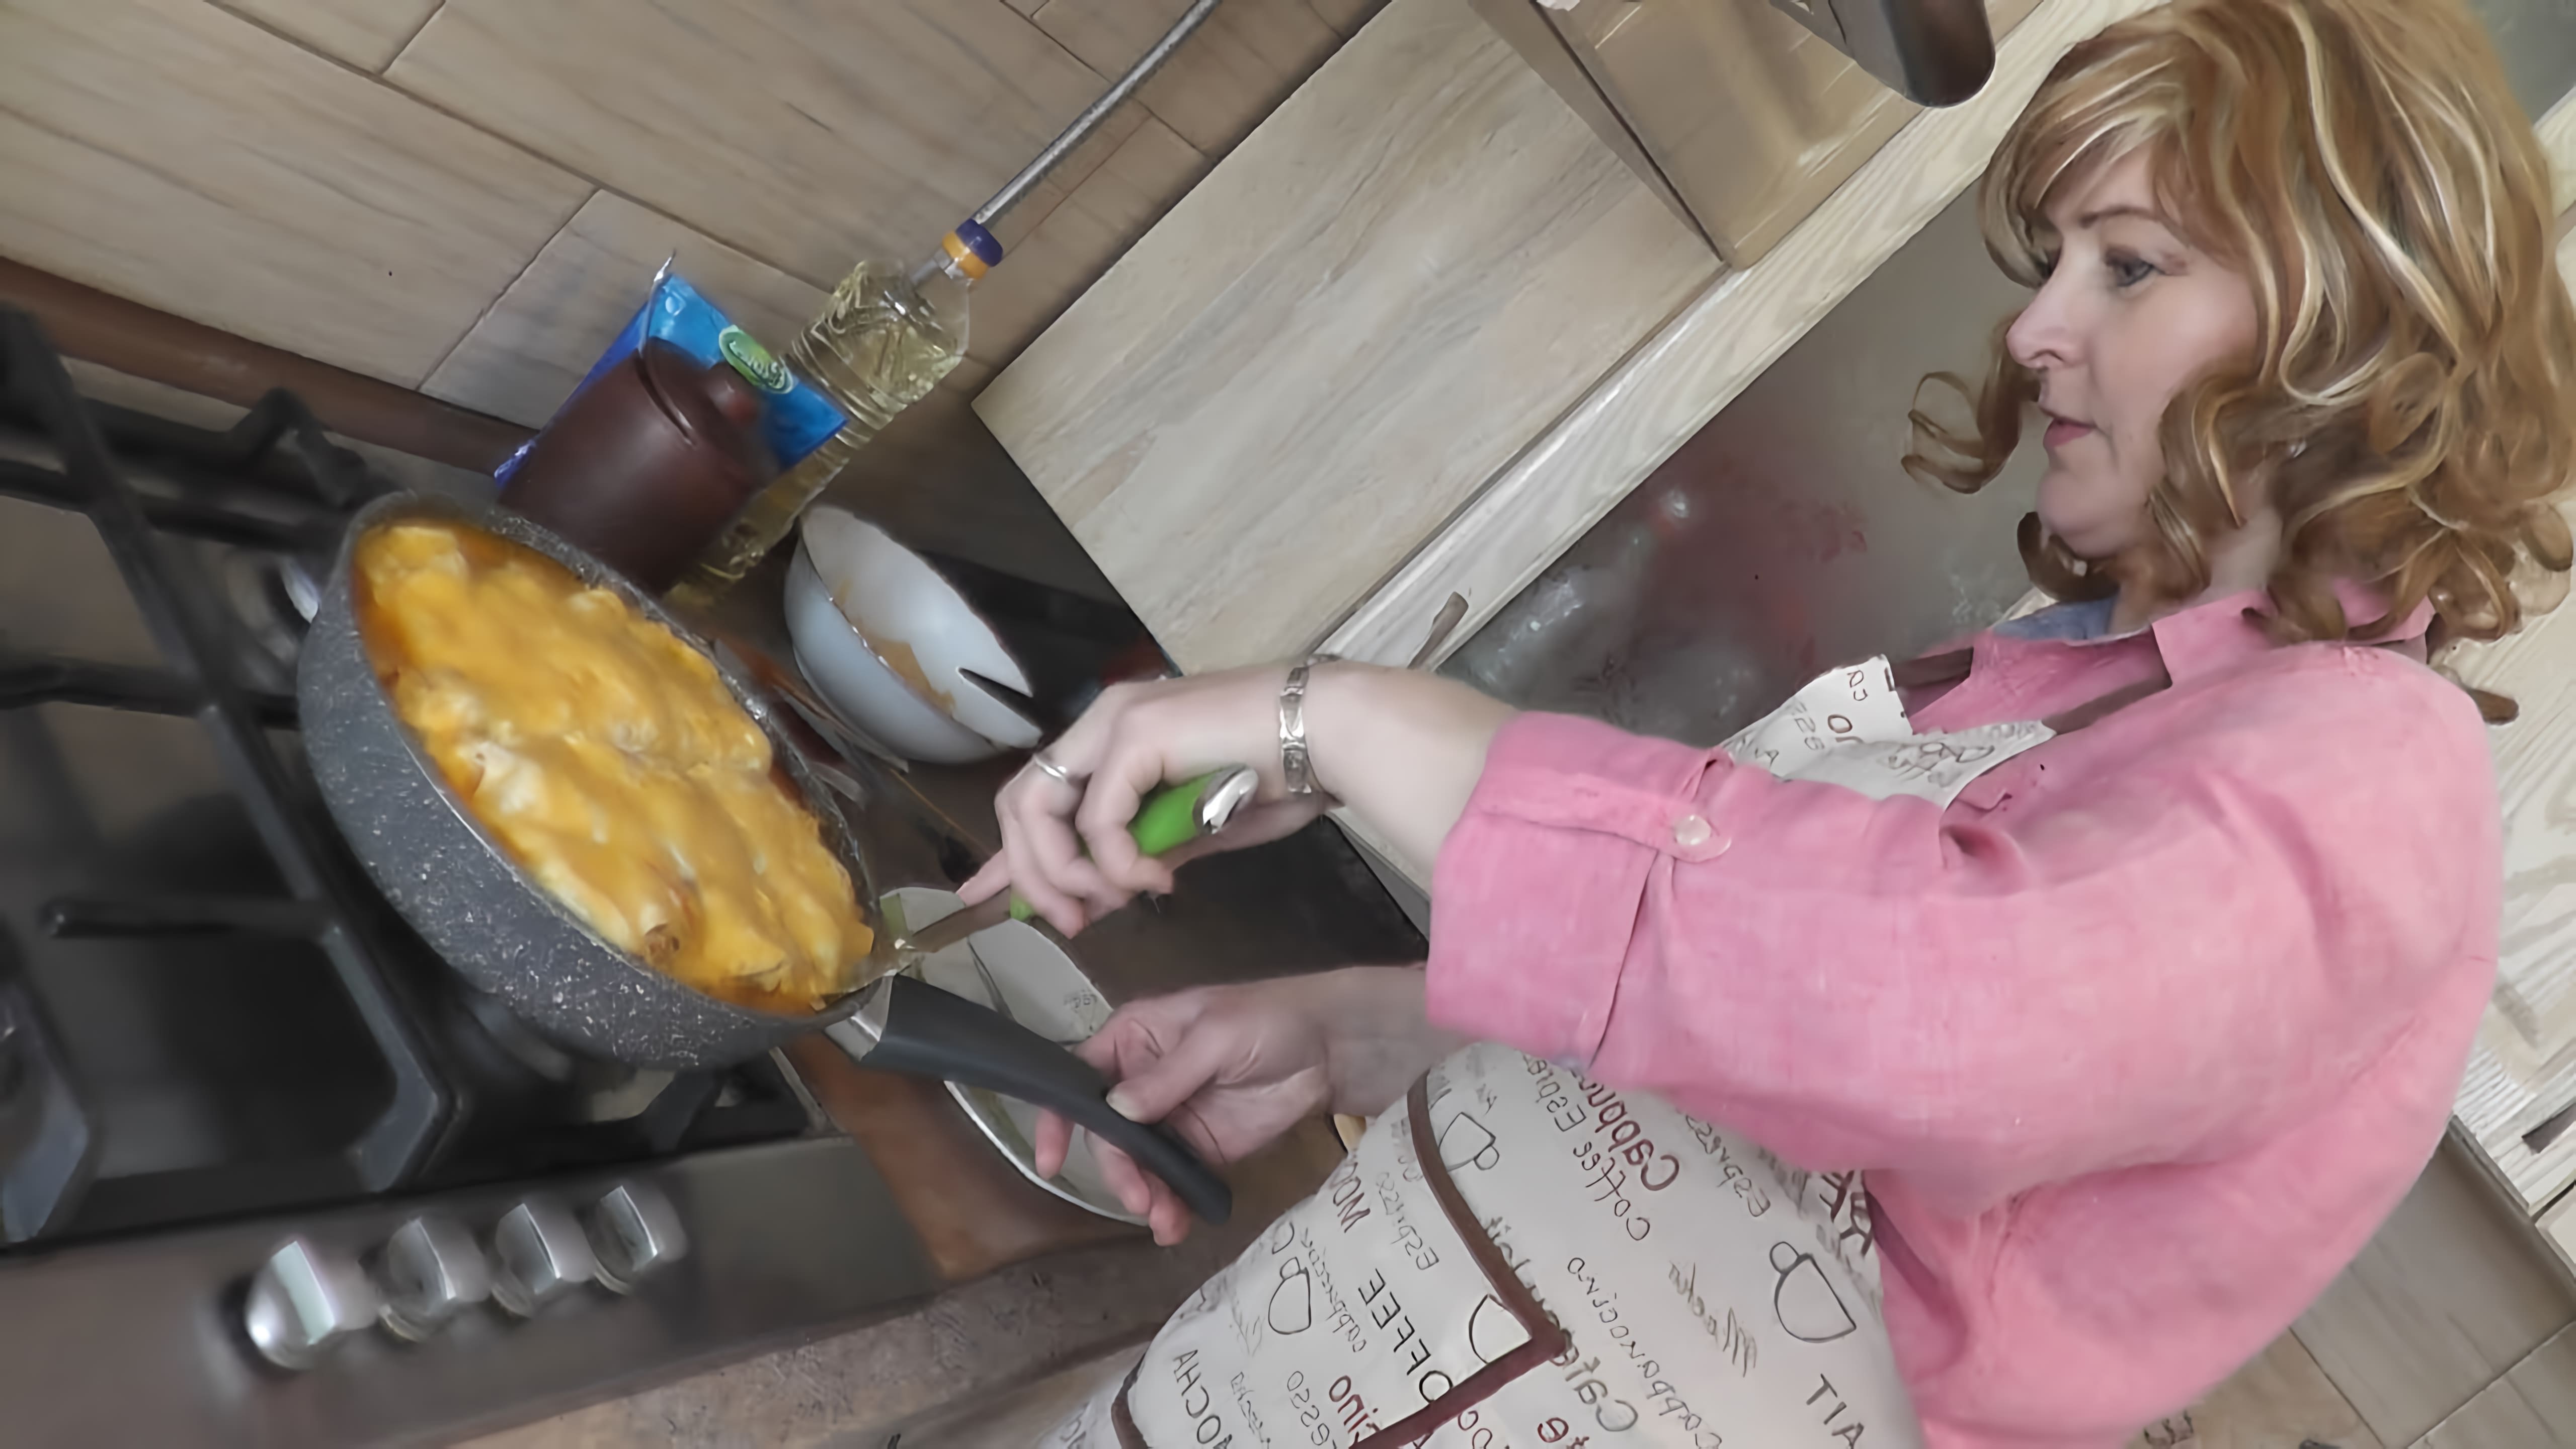 Видео-ролик под названием "Лазанья в сковороде" демонстрирует процесс приготовления блюда, которое называется "Лазанья"